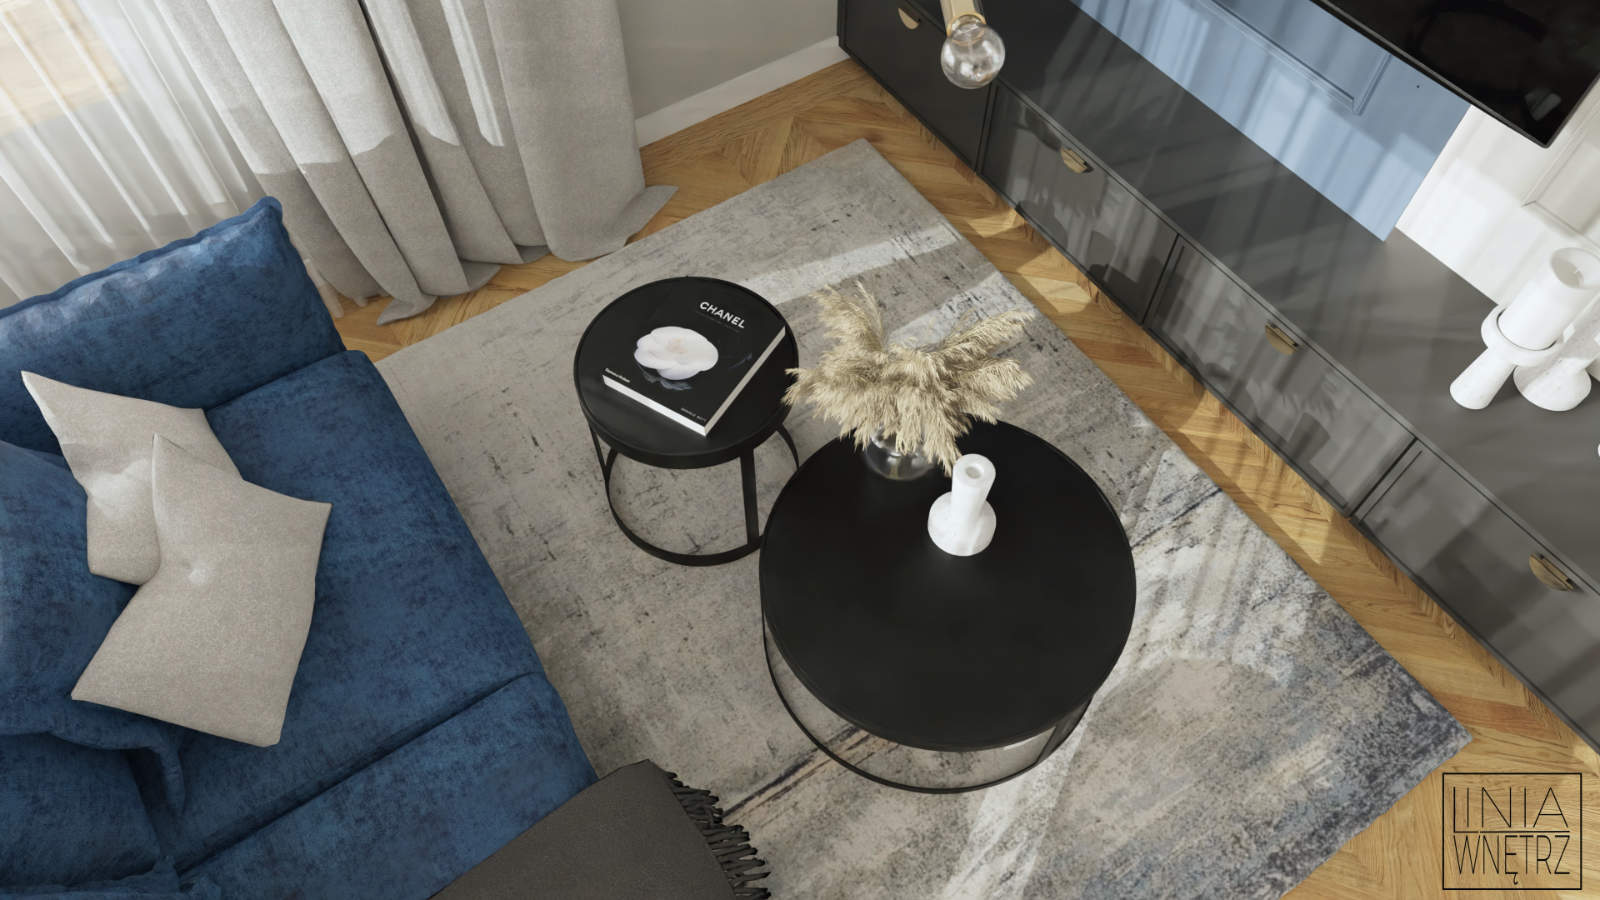 projektowanie wnętrz bielsko biała granatowa sofa szary kolor w pokoju jasne wnętrza z granatowym akcentem projektowanie wnętrz Bielsko-Biała